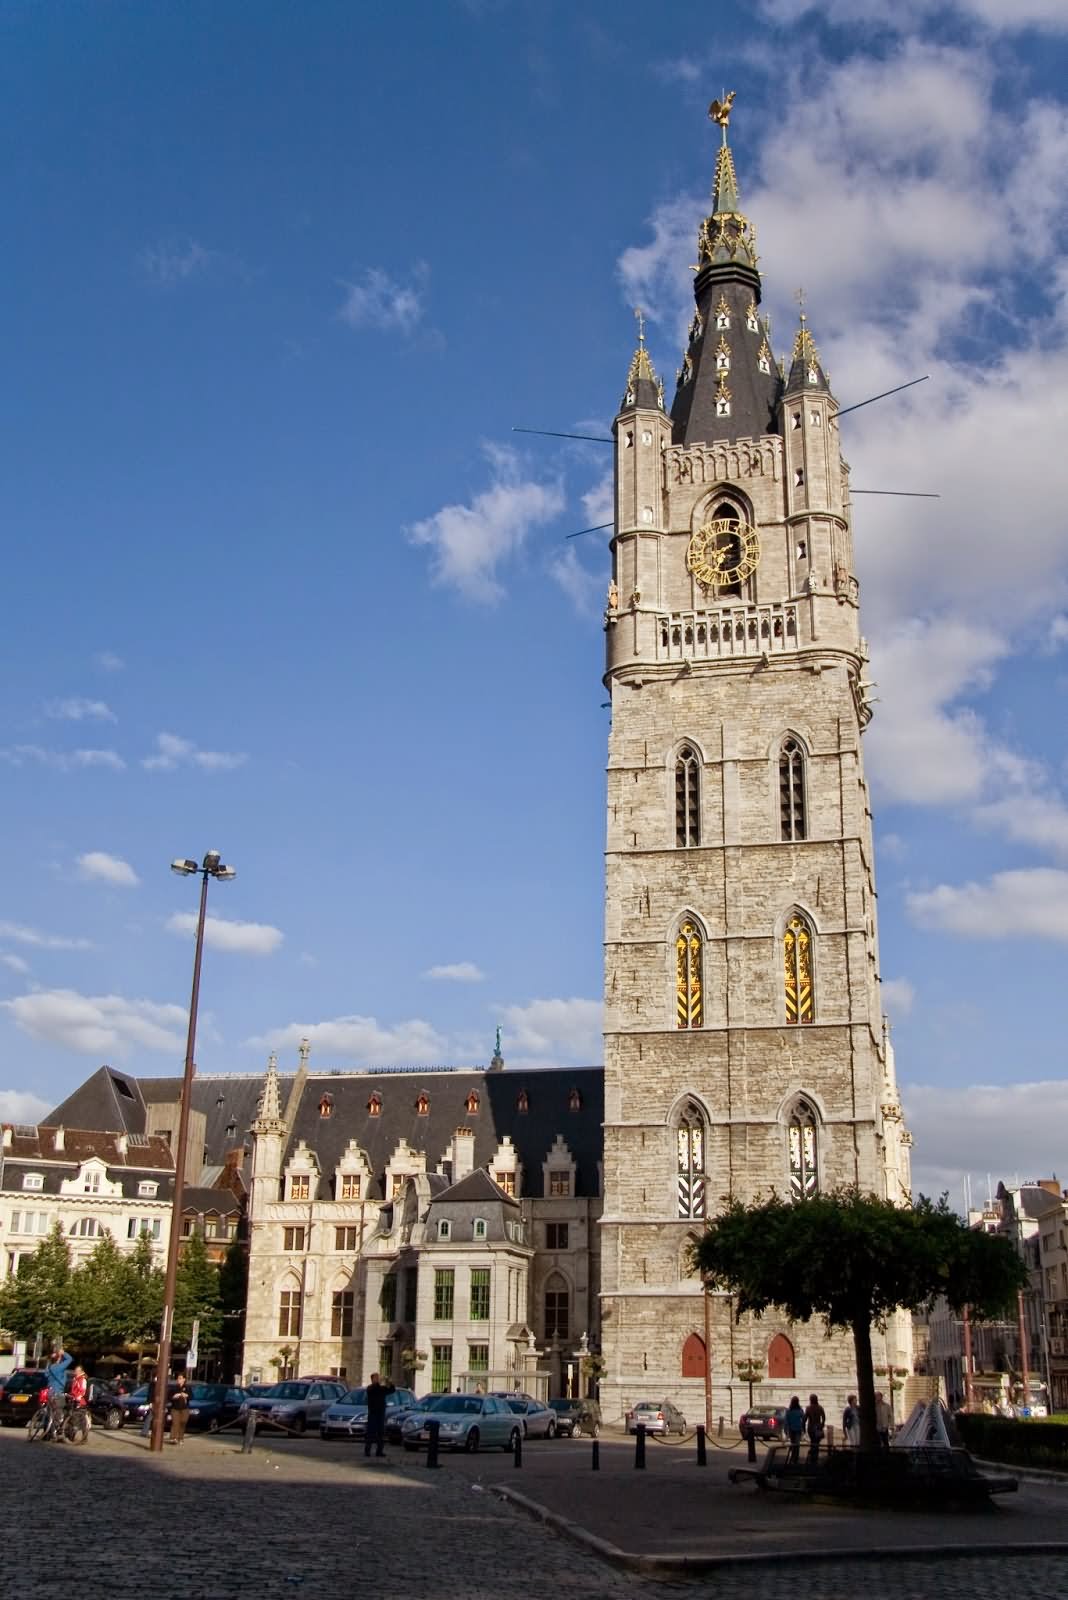 Belfort Tower Of Ghent In Belgium